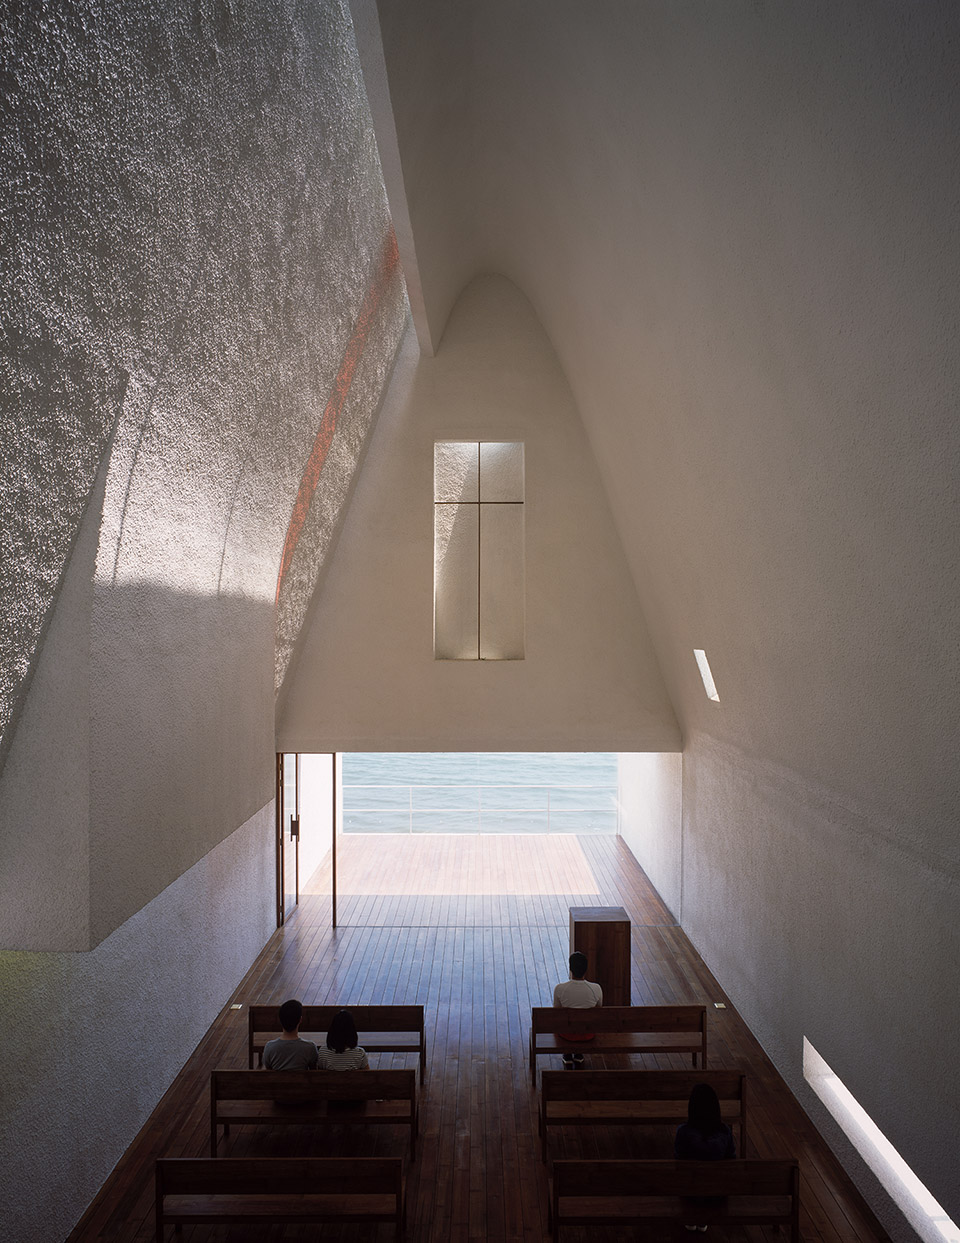 025-seashore-chapel-china-by-vector-architects.jpg